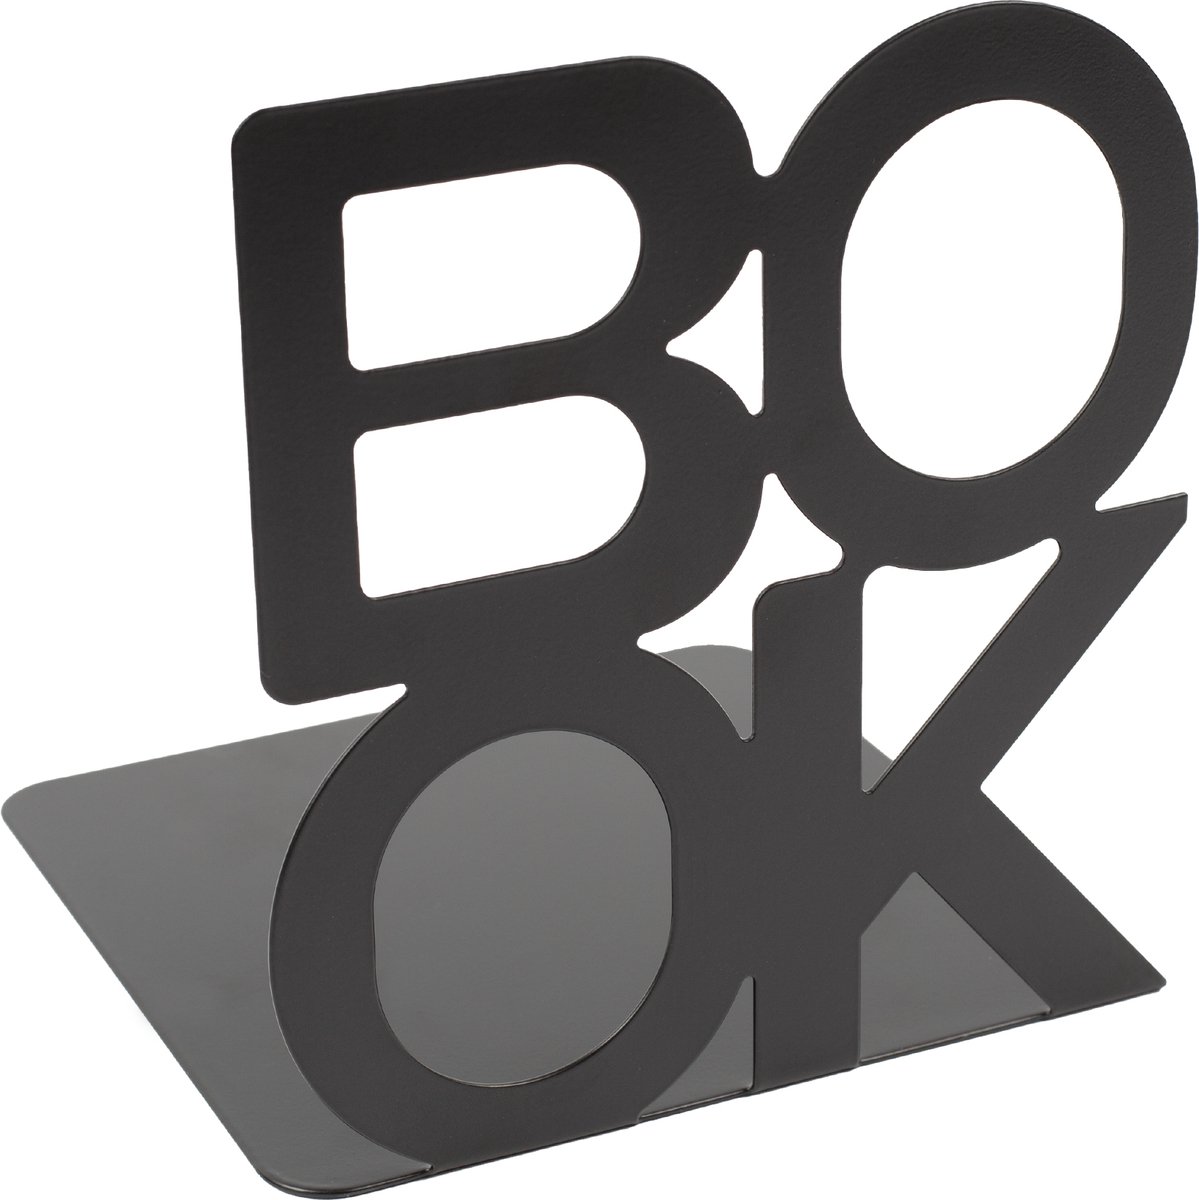 Boeksteun – Boekensteun - Boekenhouder - Boekenstandaard - 2 Stuks - Zwart